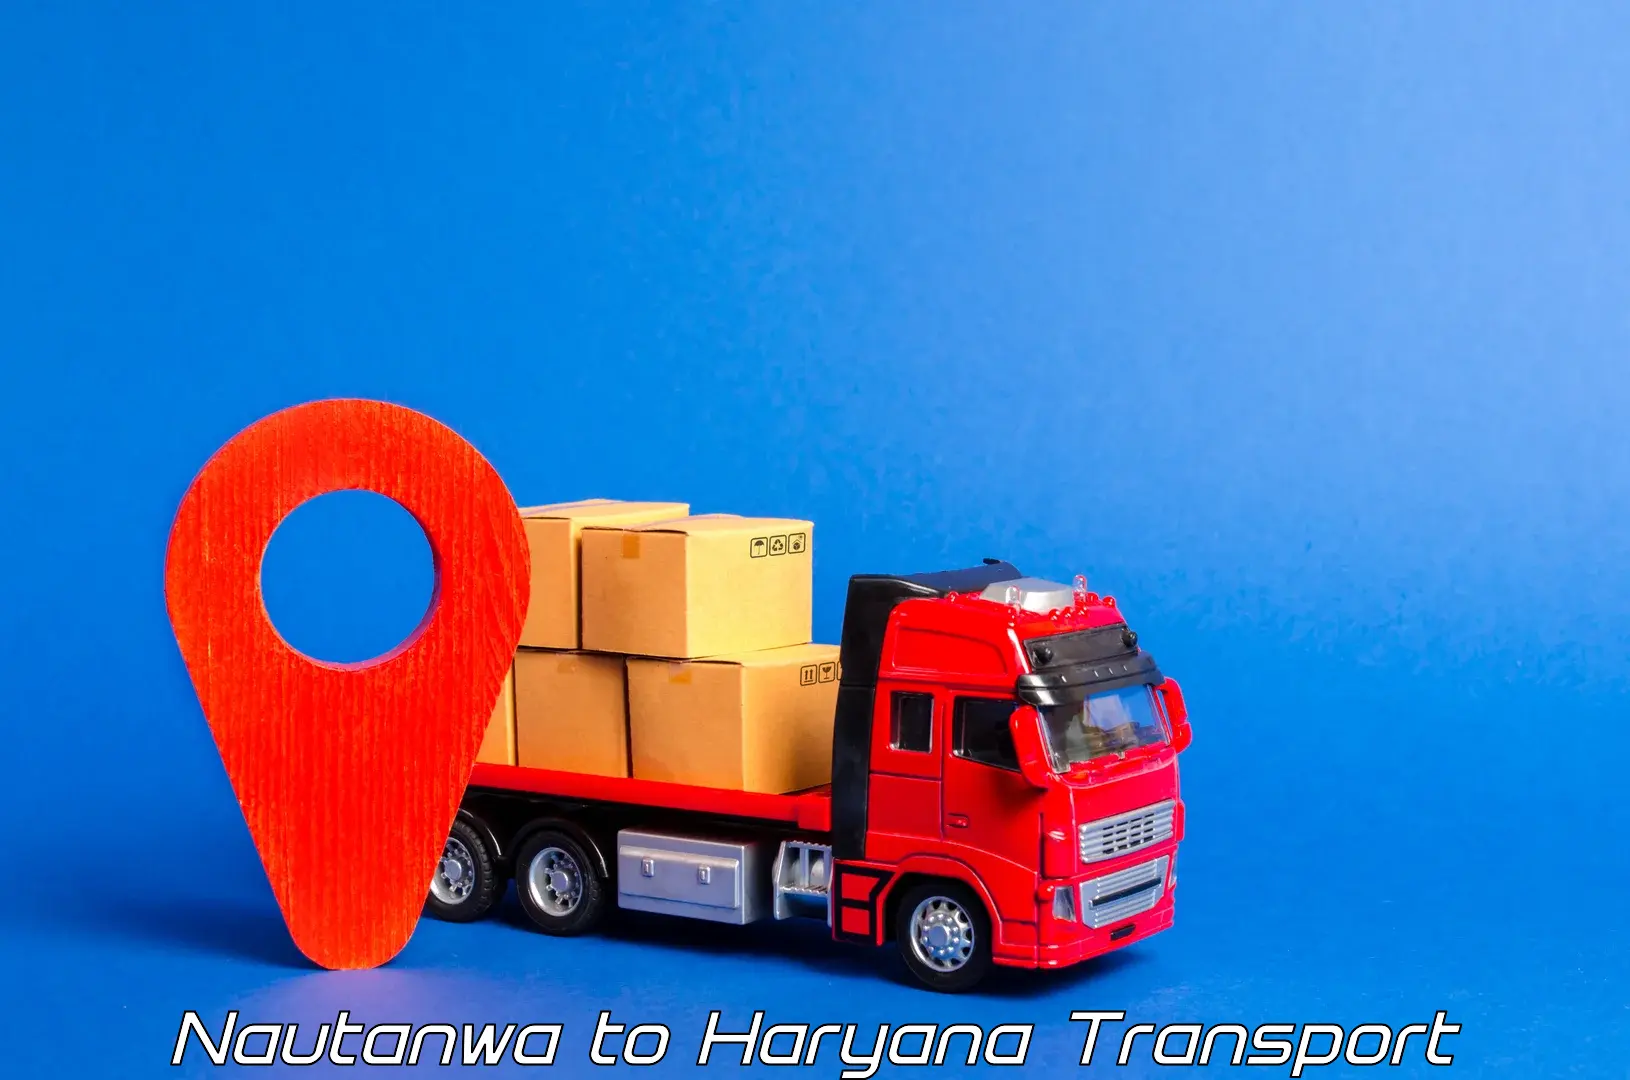 Air cargo transport services Nautanwa to Ratia